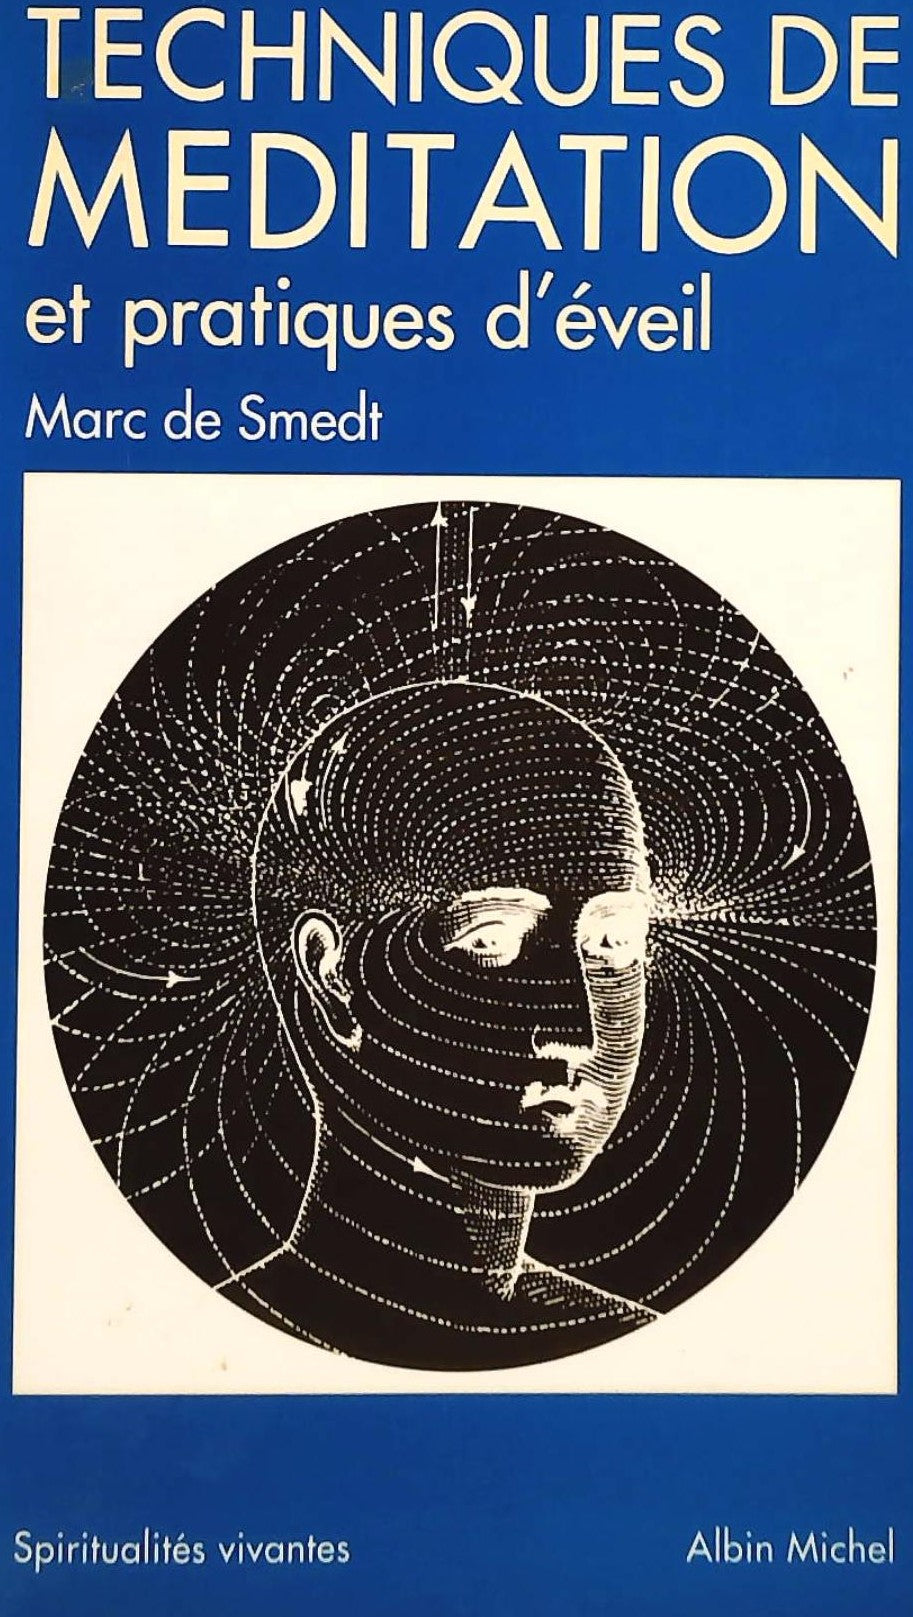 Livre ISBN 2226017437 Techniques de méditation (Marc de Smedt)